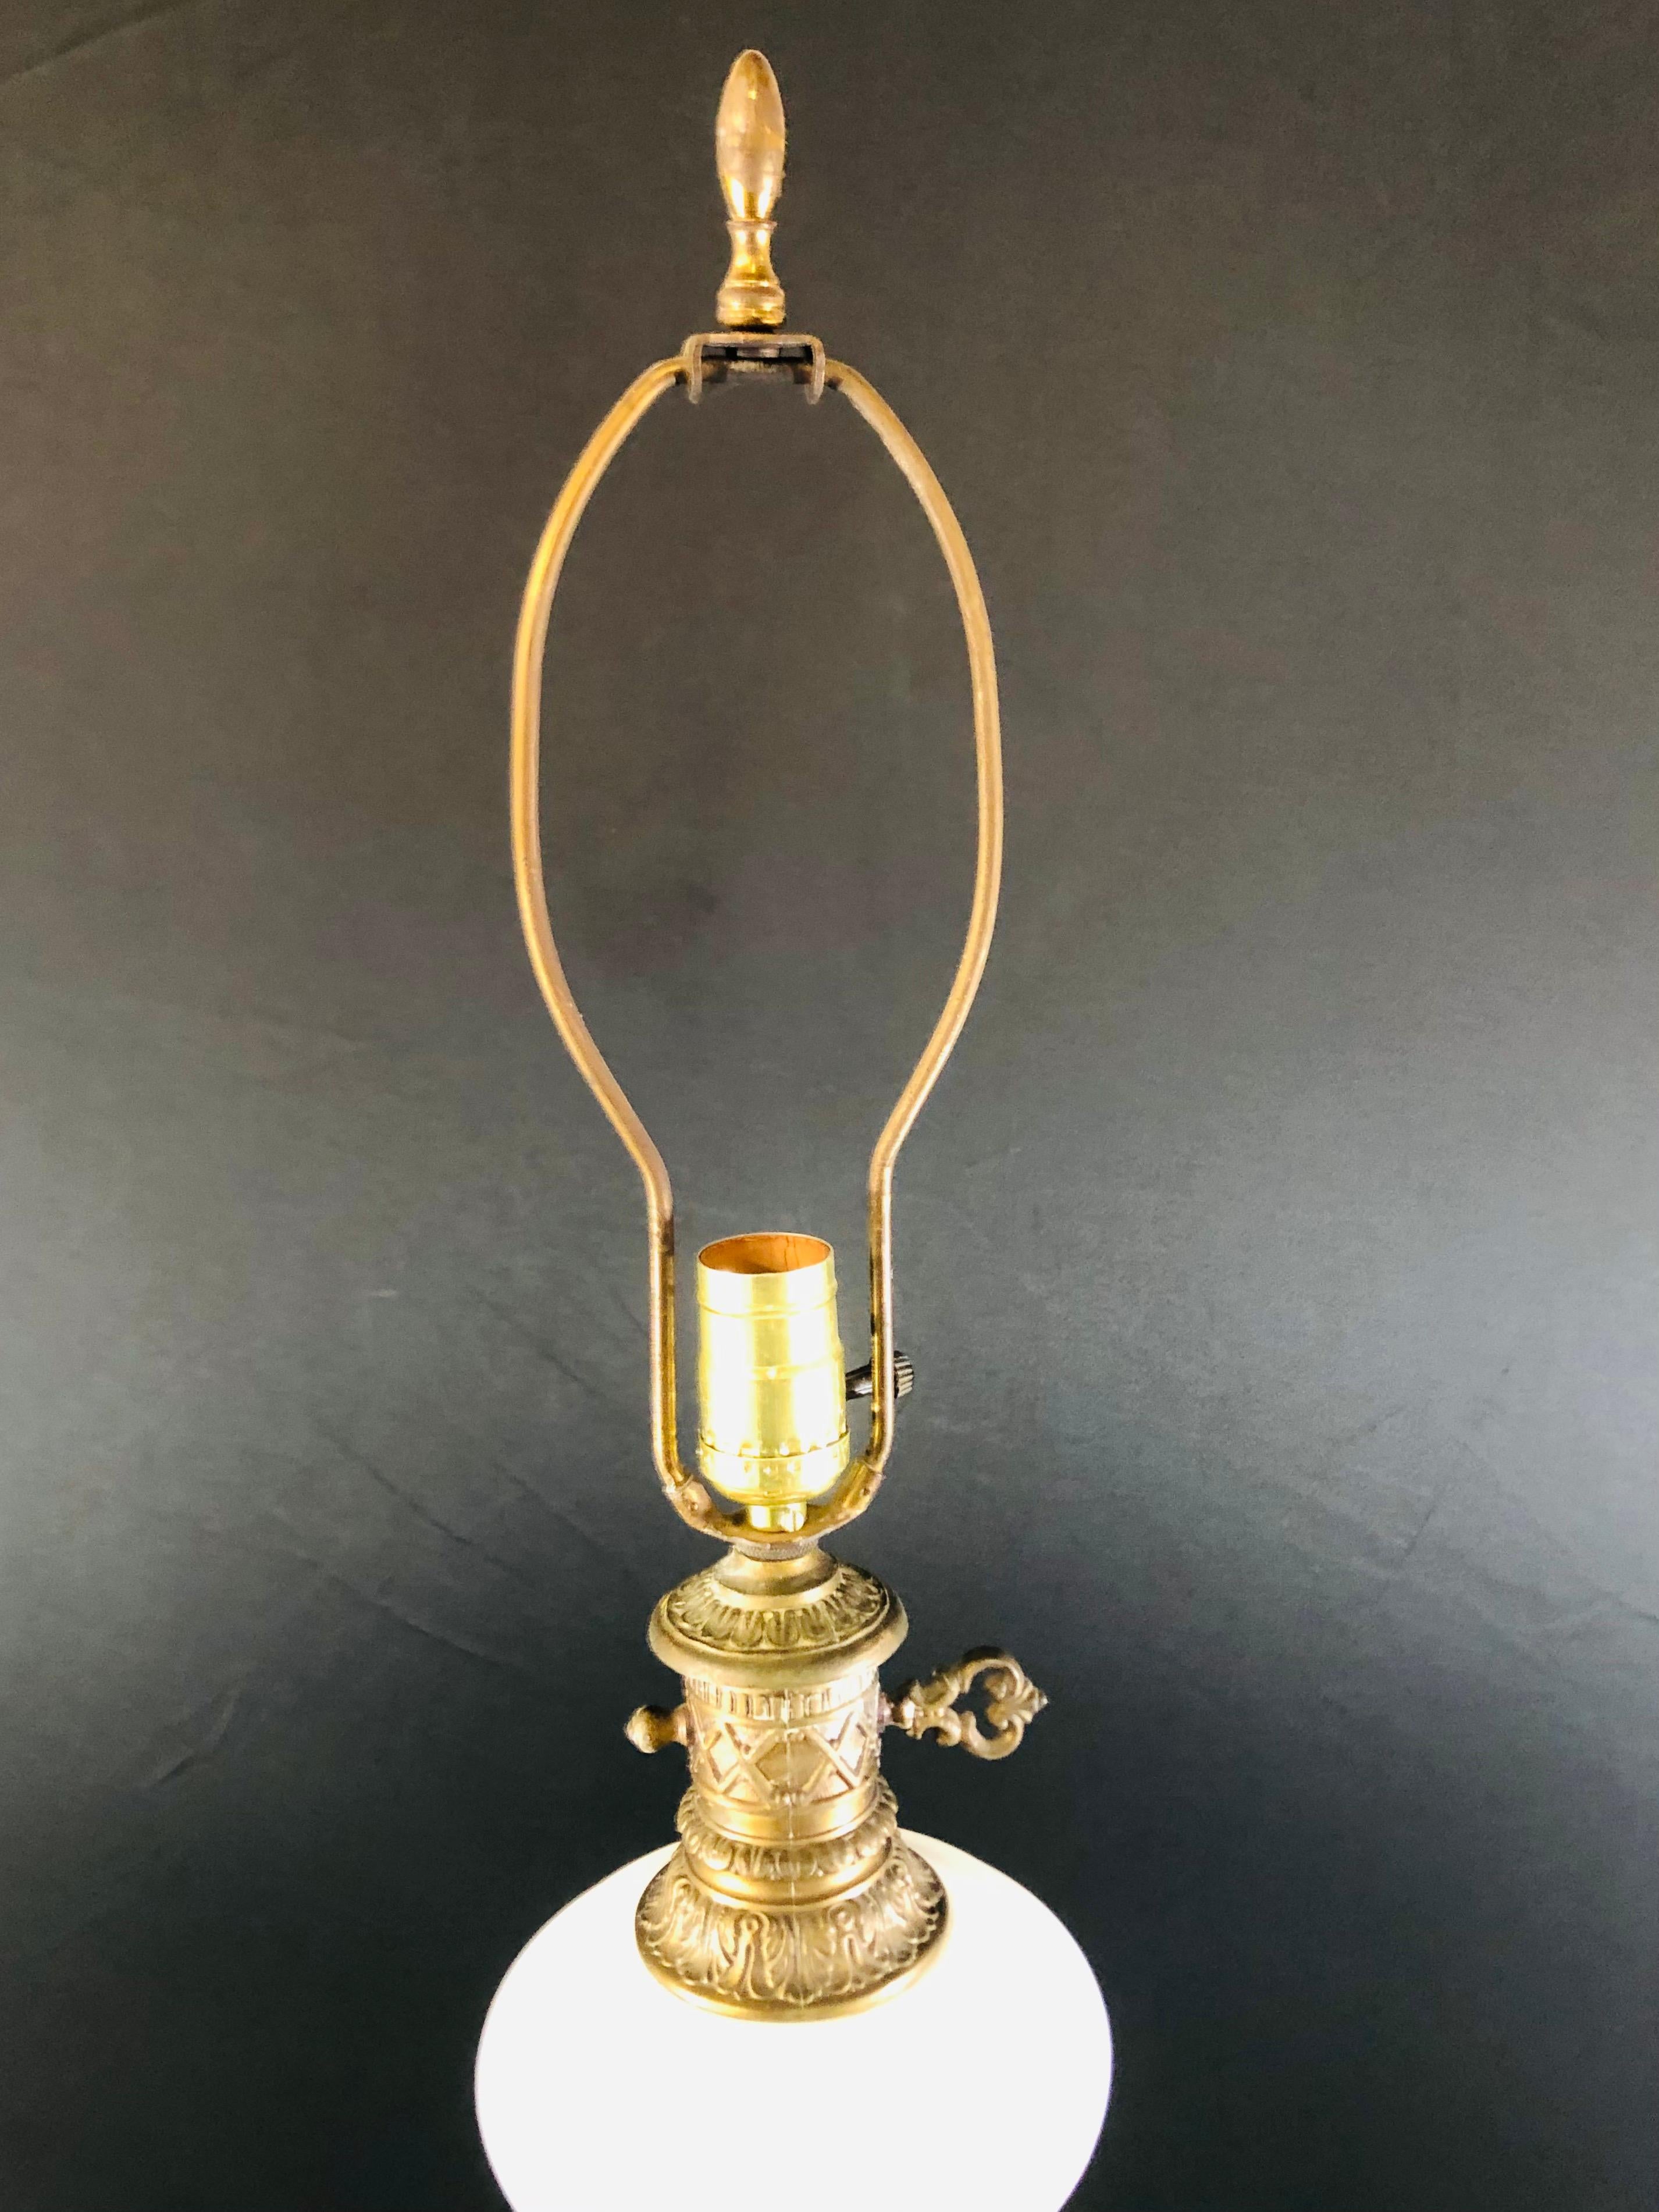 Une lampe de table française ancienne de style Louis XVI avec verre opalin blanc et incrustation et base en bronze. La base en bronze est finement sculptée en forme de triangle avec trois pattes d'oie et des feuilles sur le dessus pour soutenir le